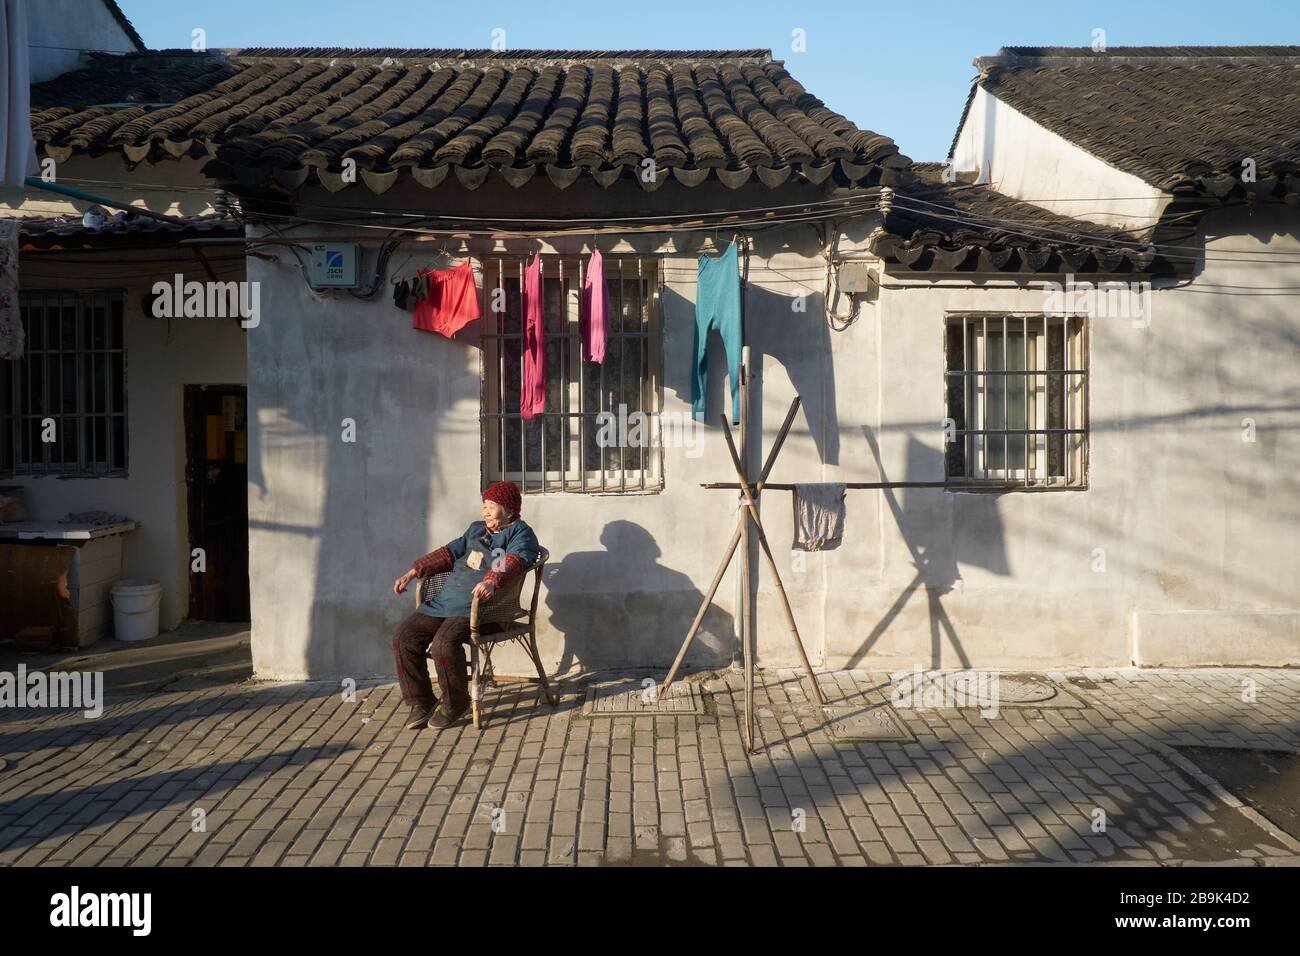 Street scene in the city of Suzhou, China Stock Photo